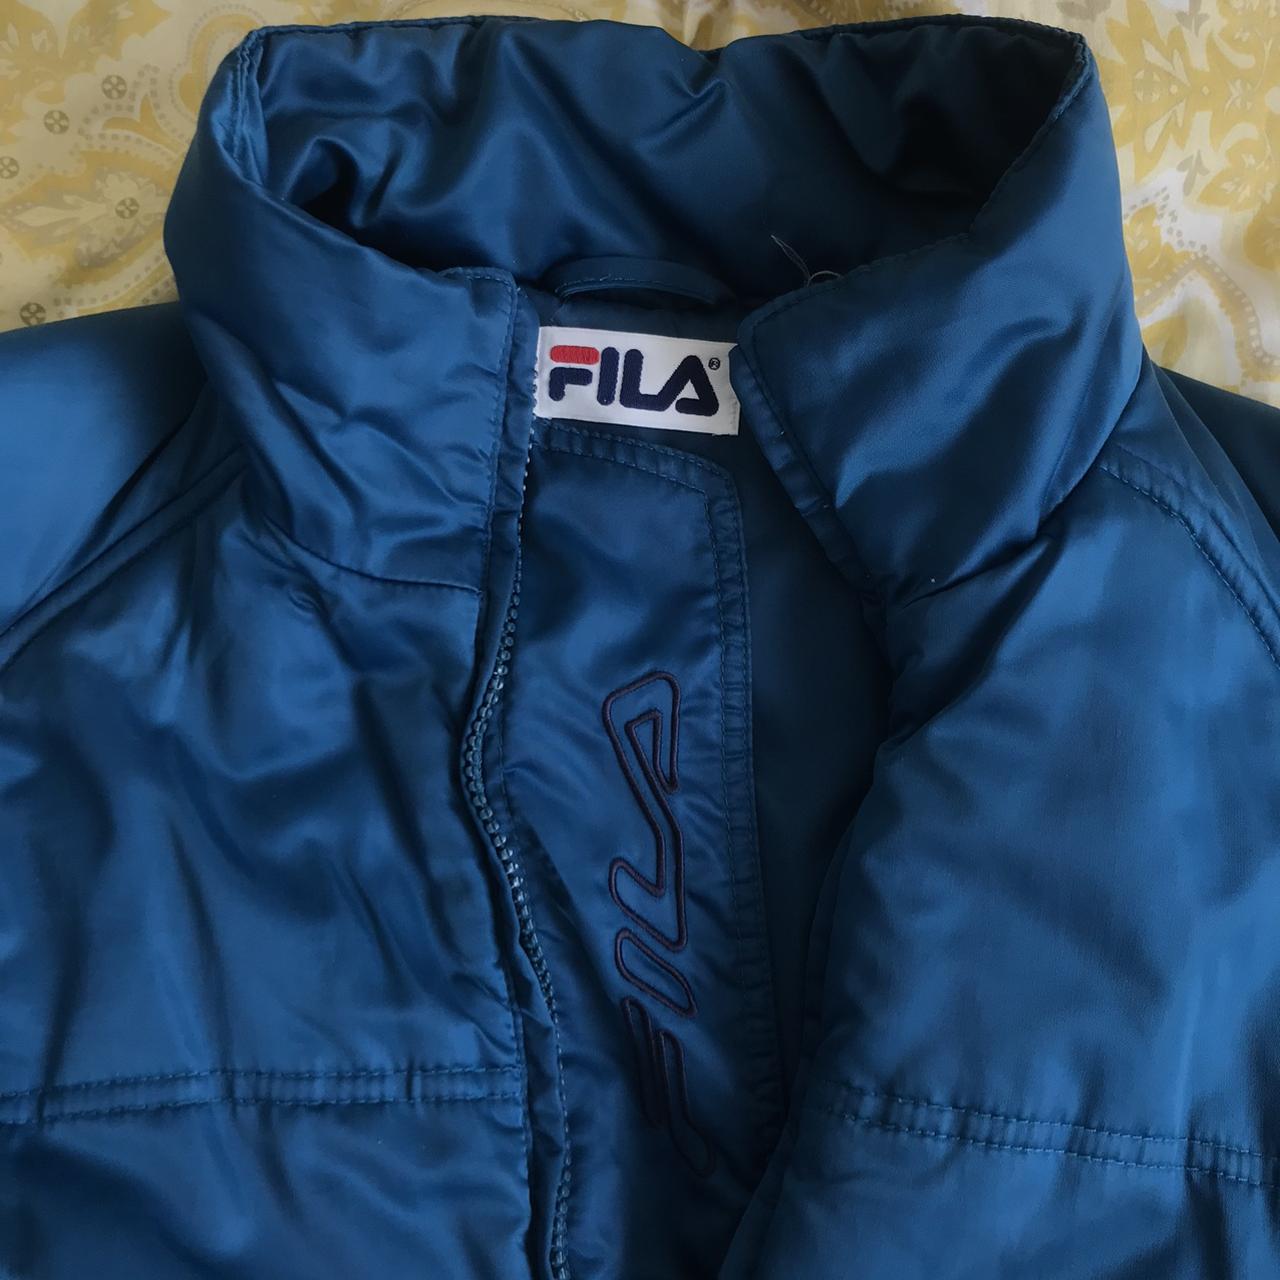 Fila Women's Jacket | Depop